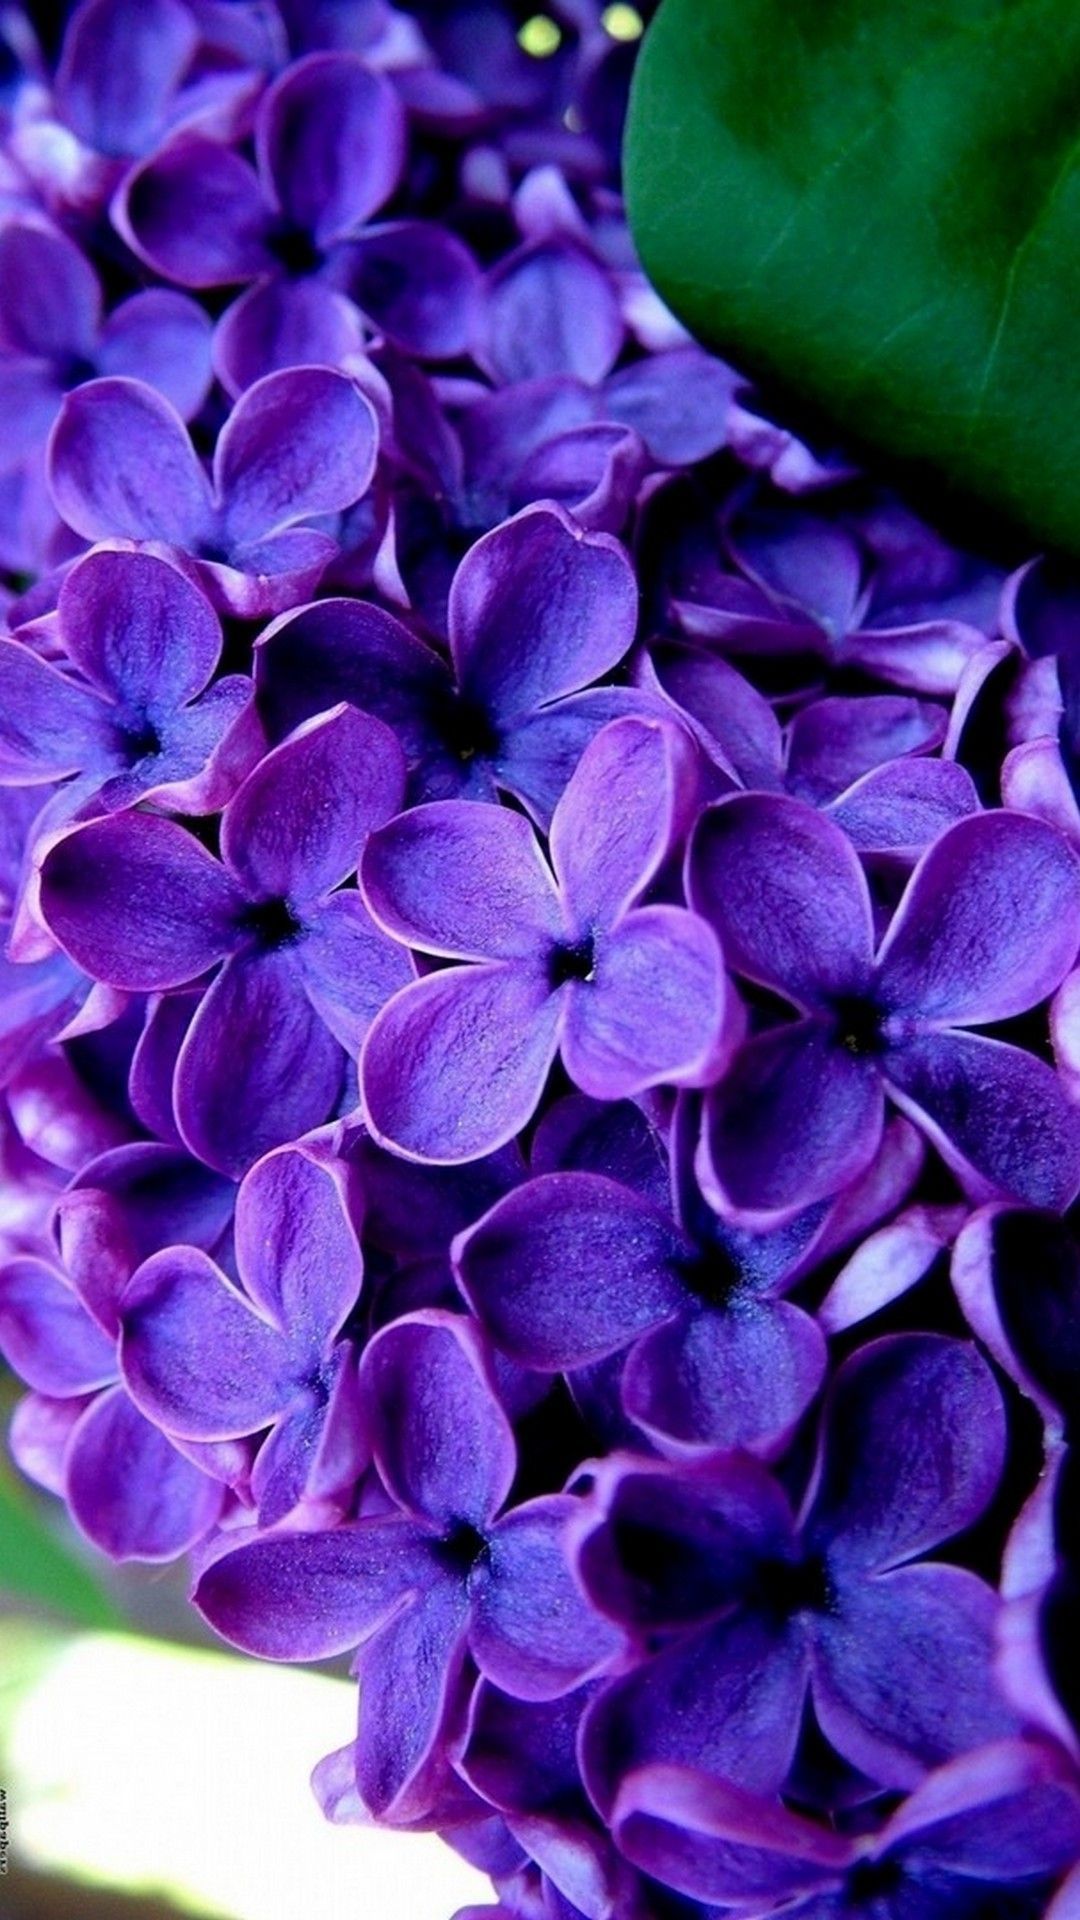 Фото на заставки на телефон цветы